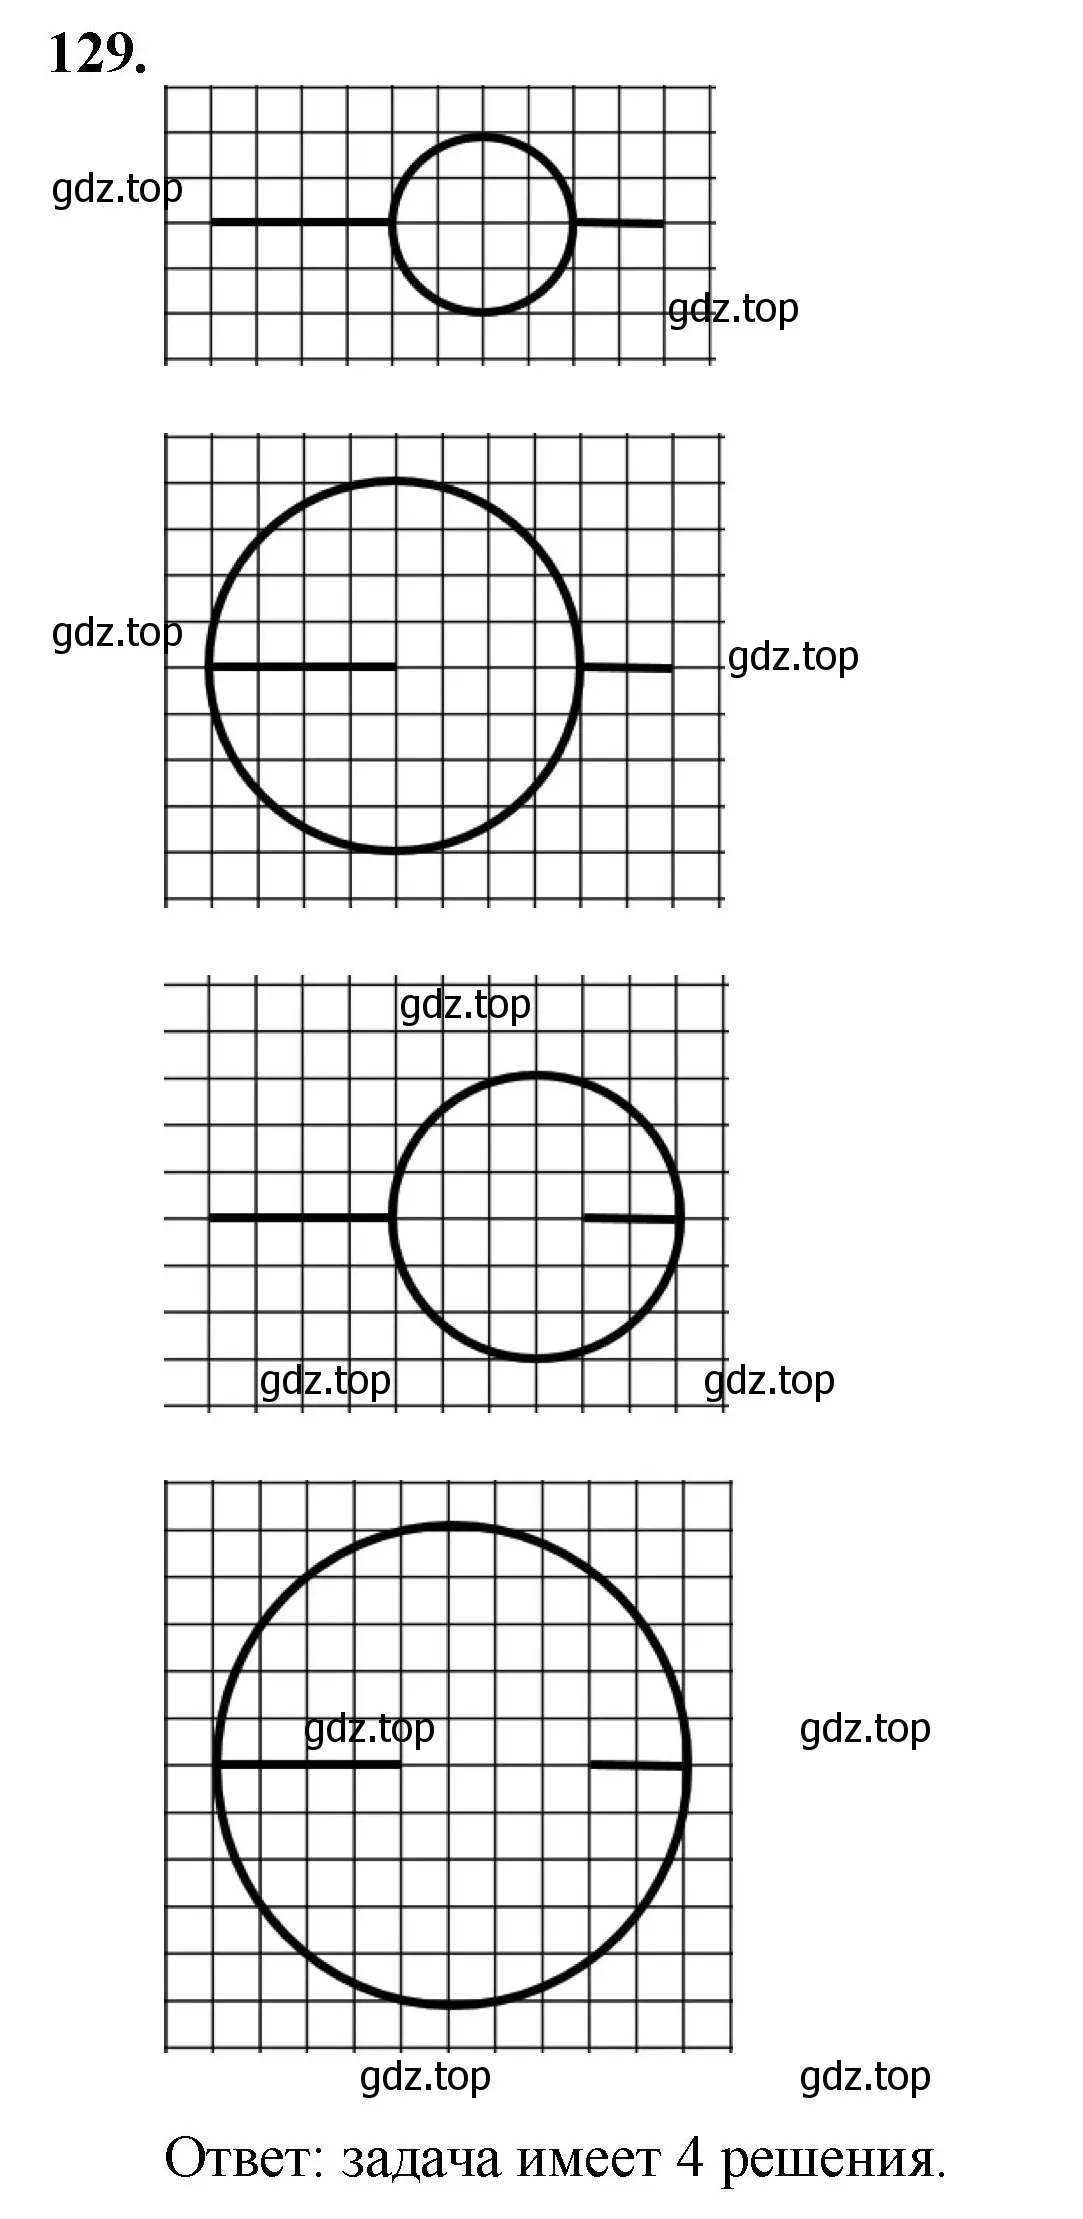 Решение номер 129 (страница 36) гдз по математике 5 класс Мерзляк, Полонский, учебник